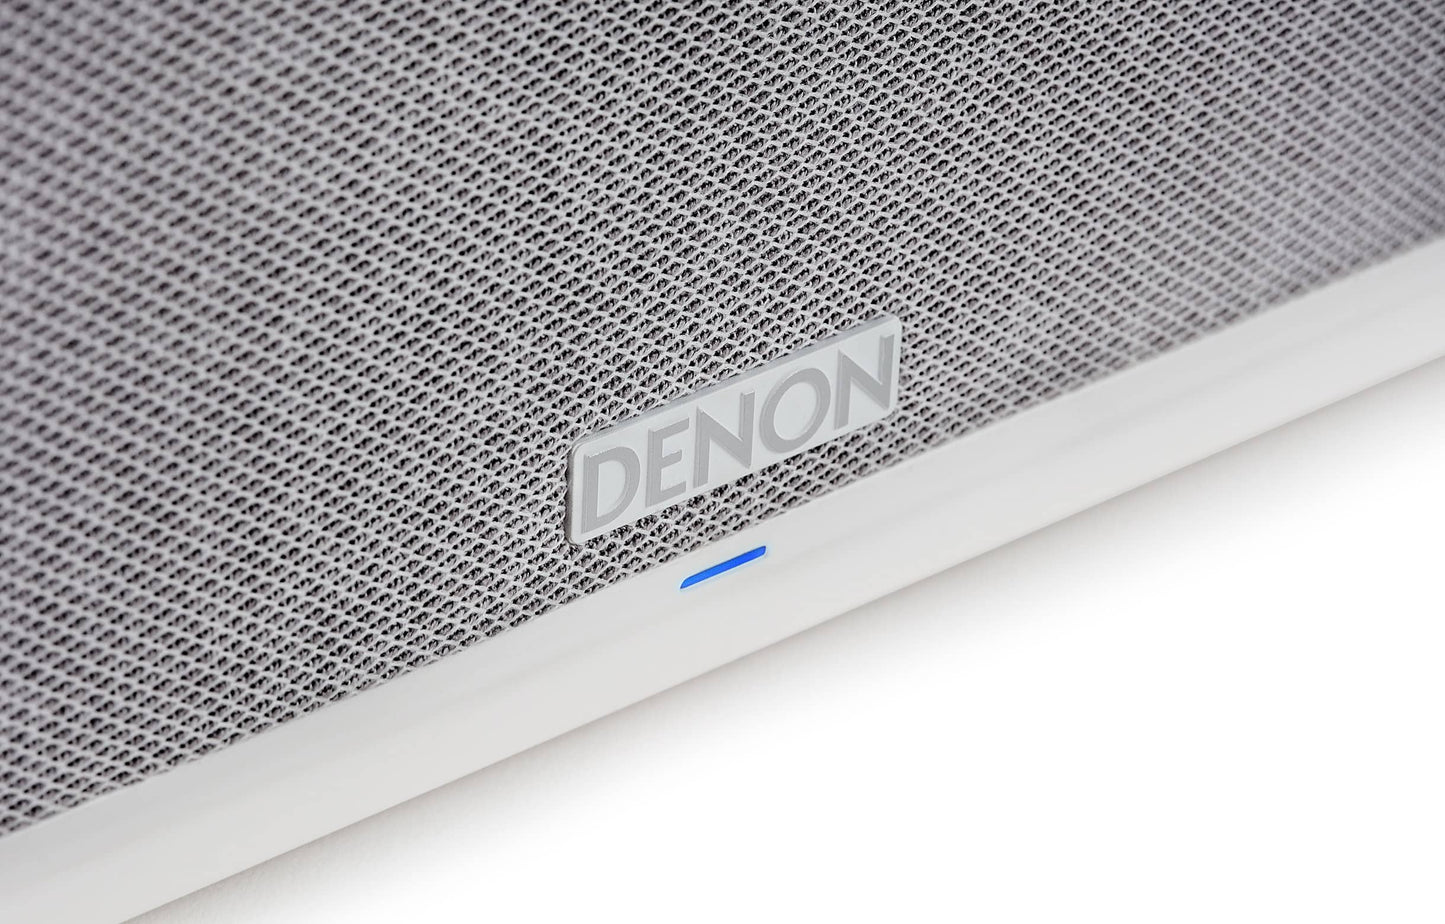 Denon - Home 250